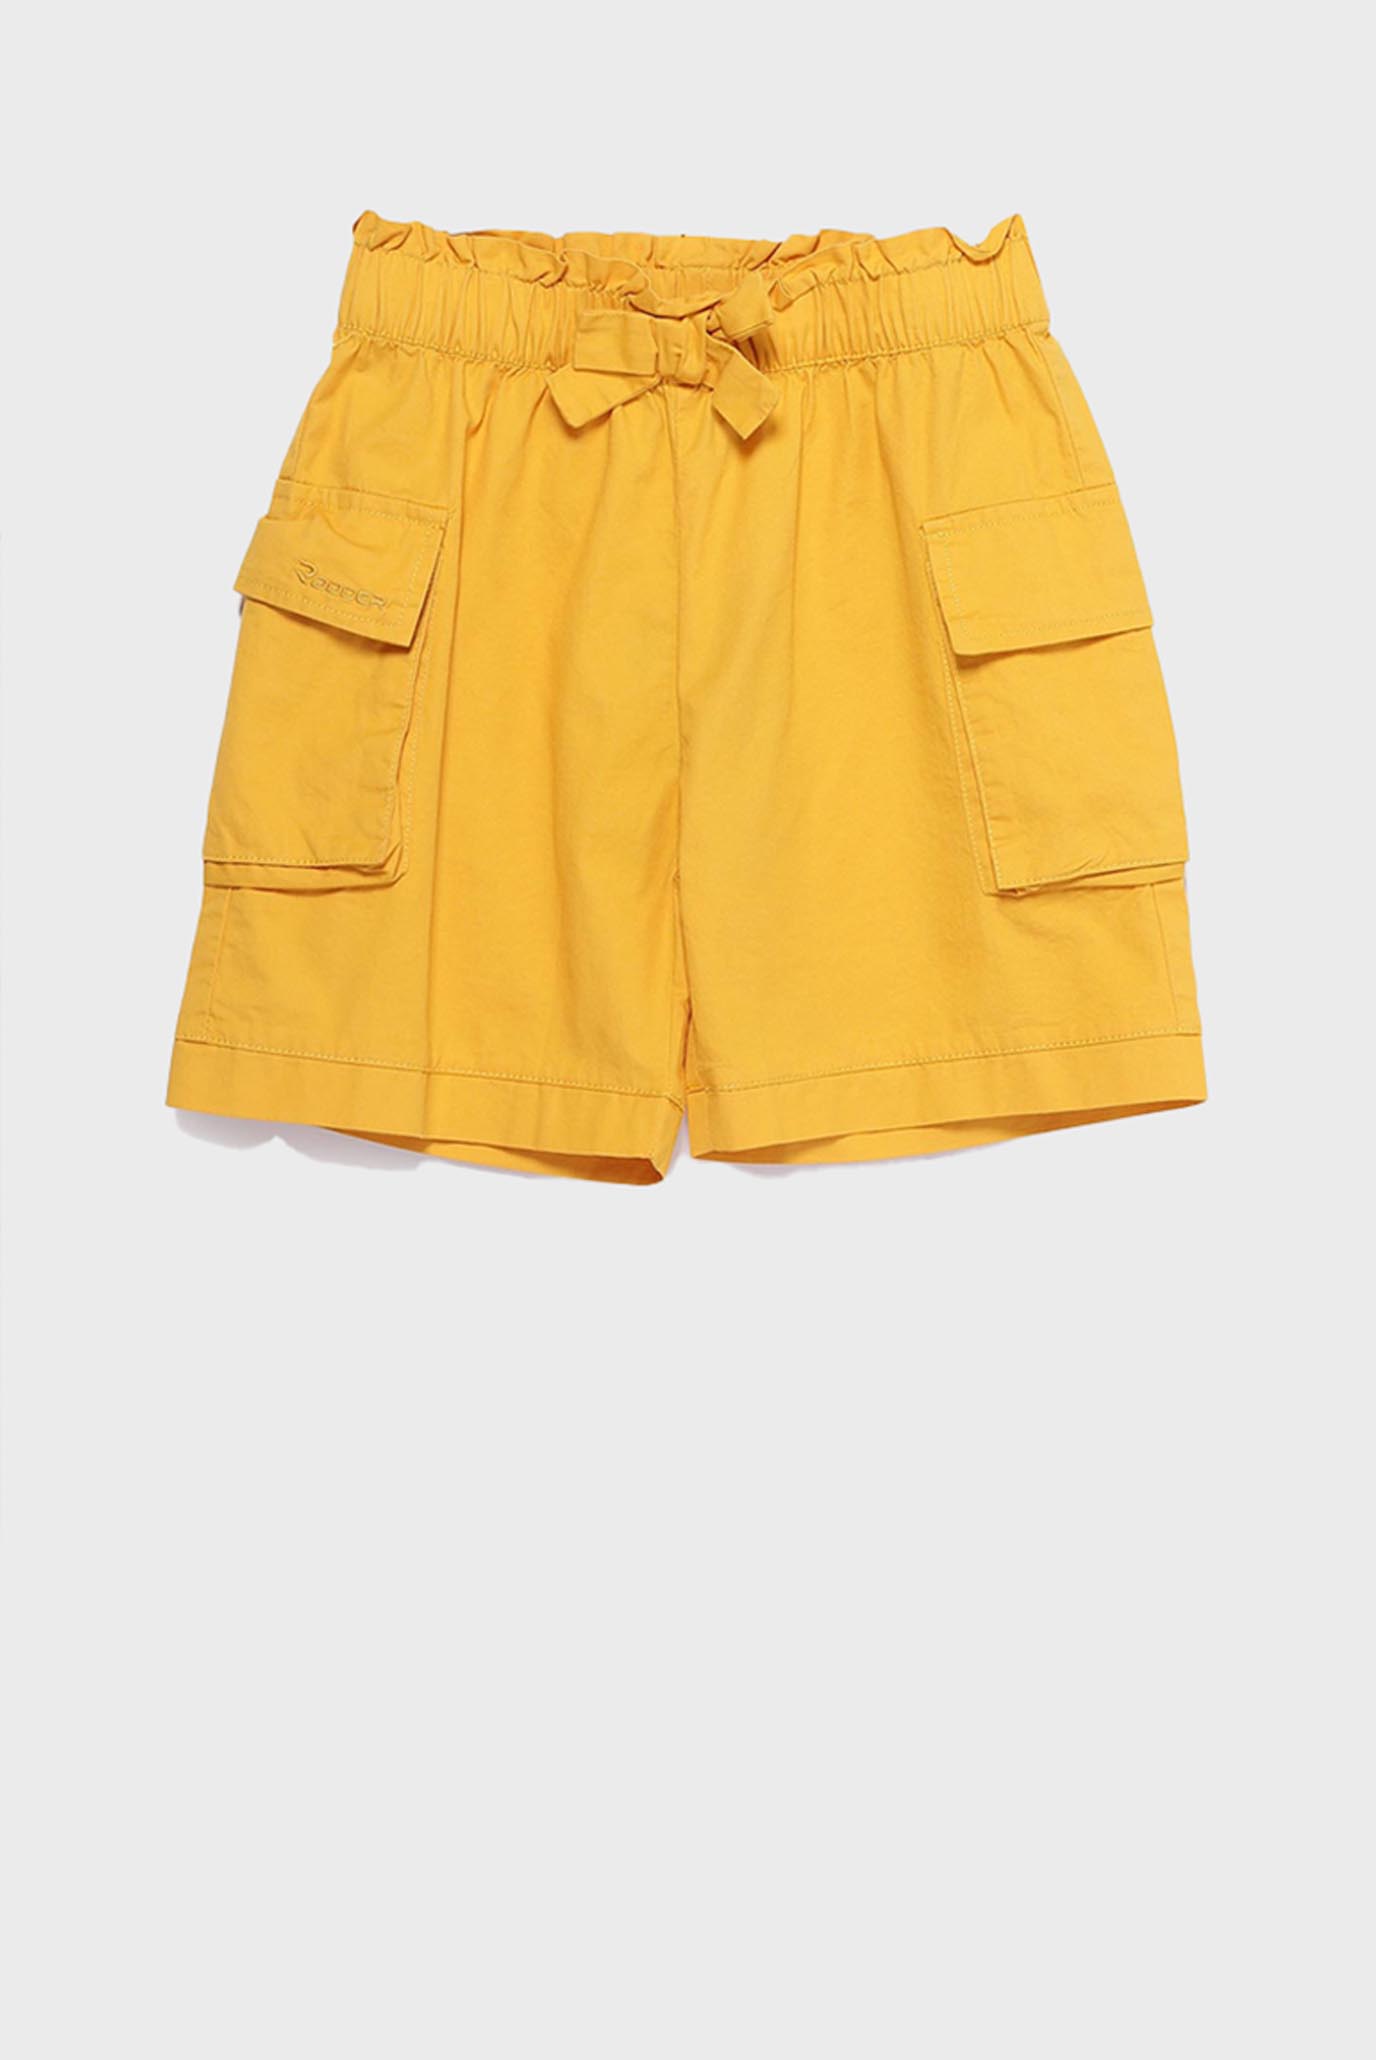 Детские желтые шорты Kasi 1